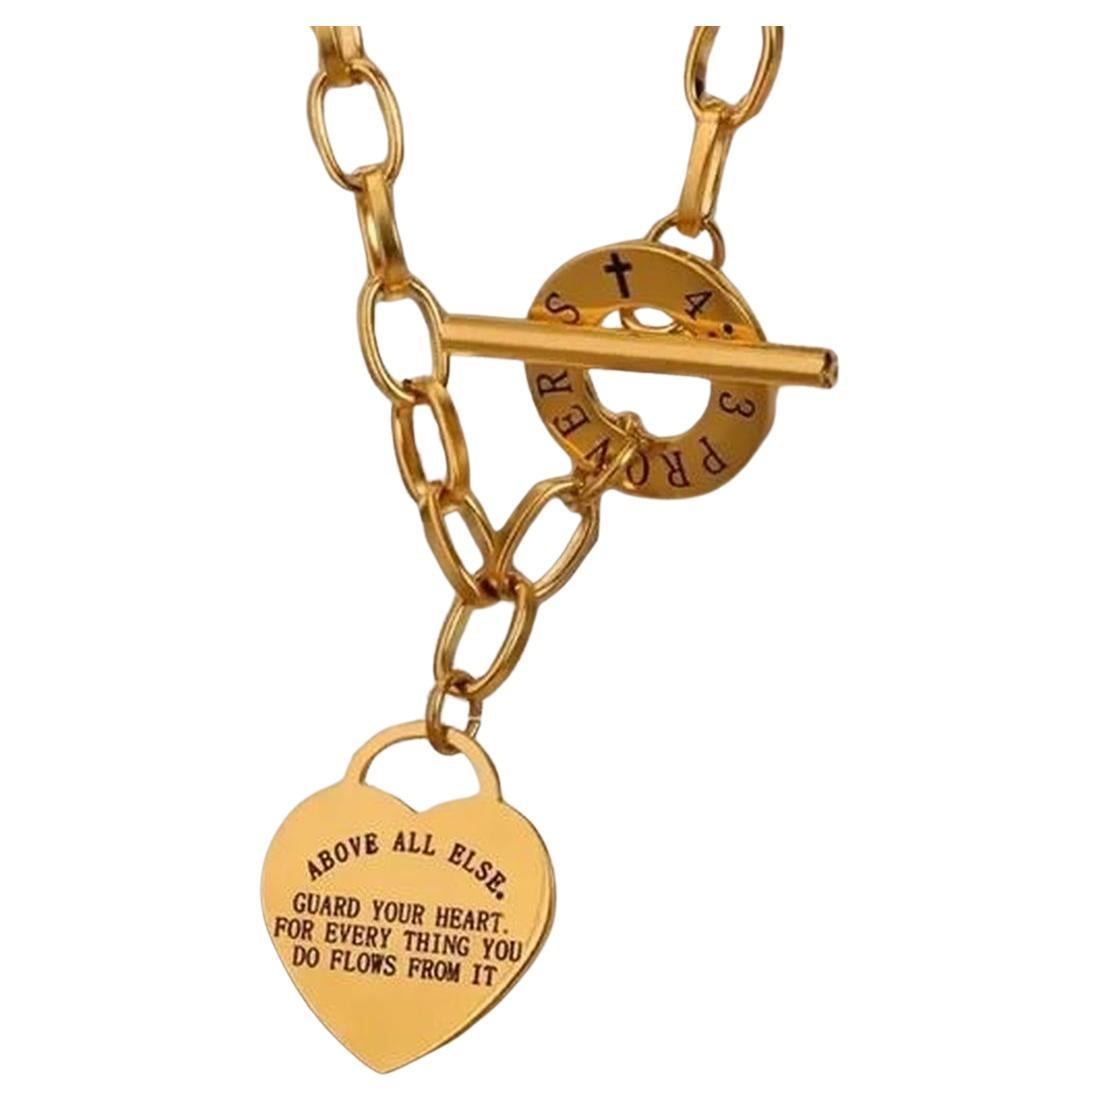 Vintage Golden Heart Lock Pendant Toggle Link Necklace